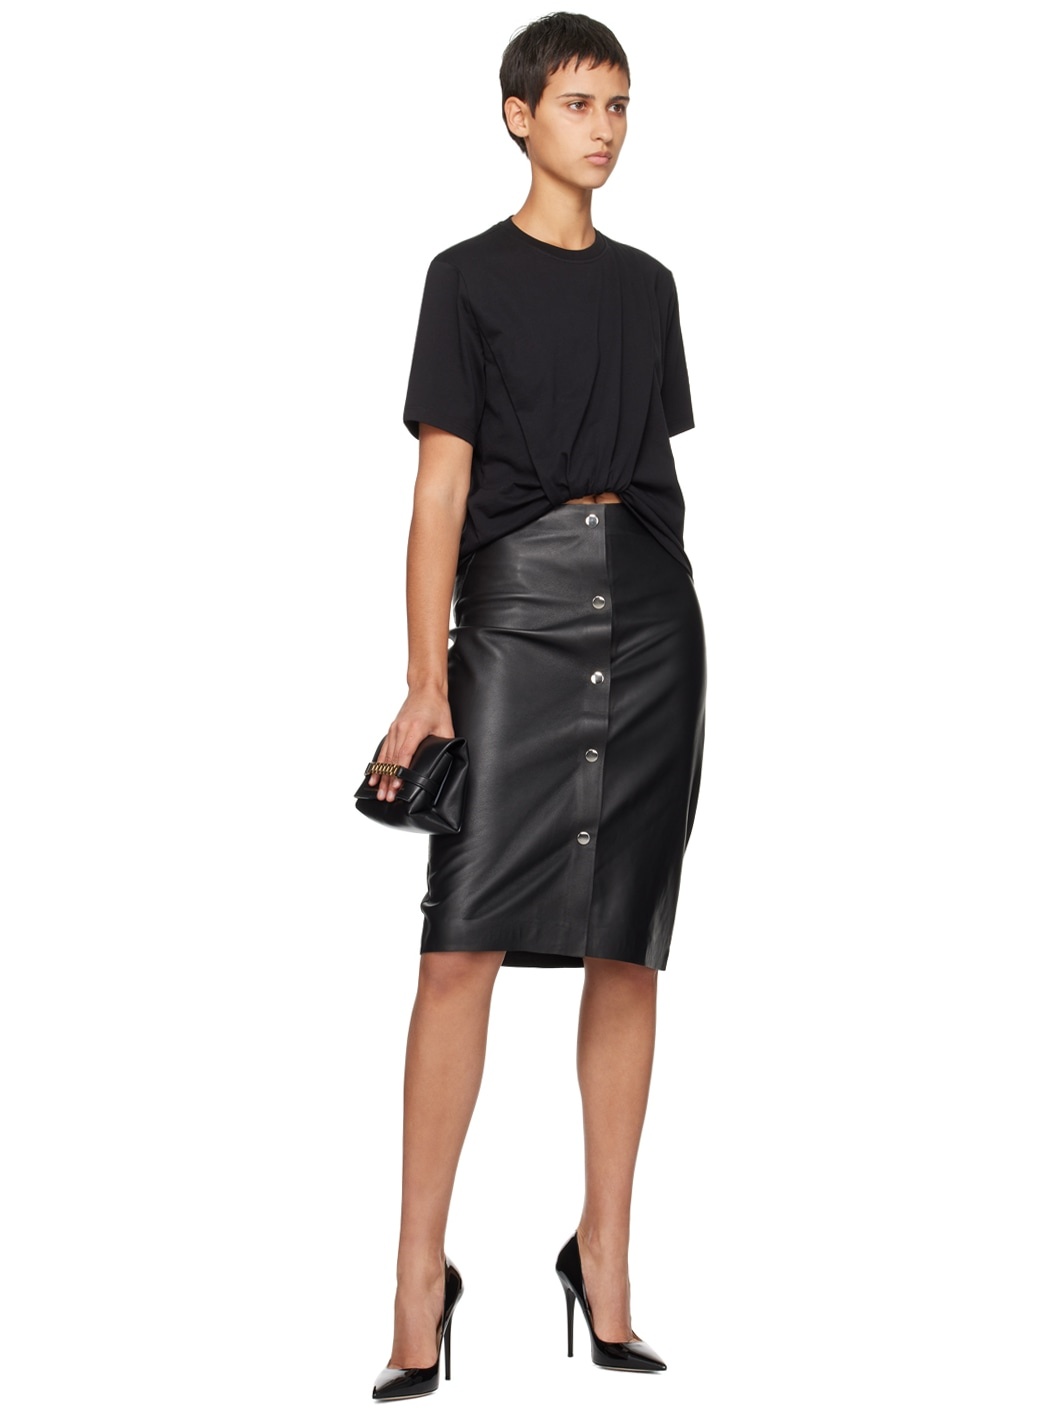 Black Press-Stud Leather Midi Skirt - 4